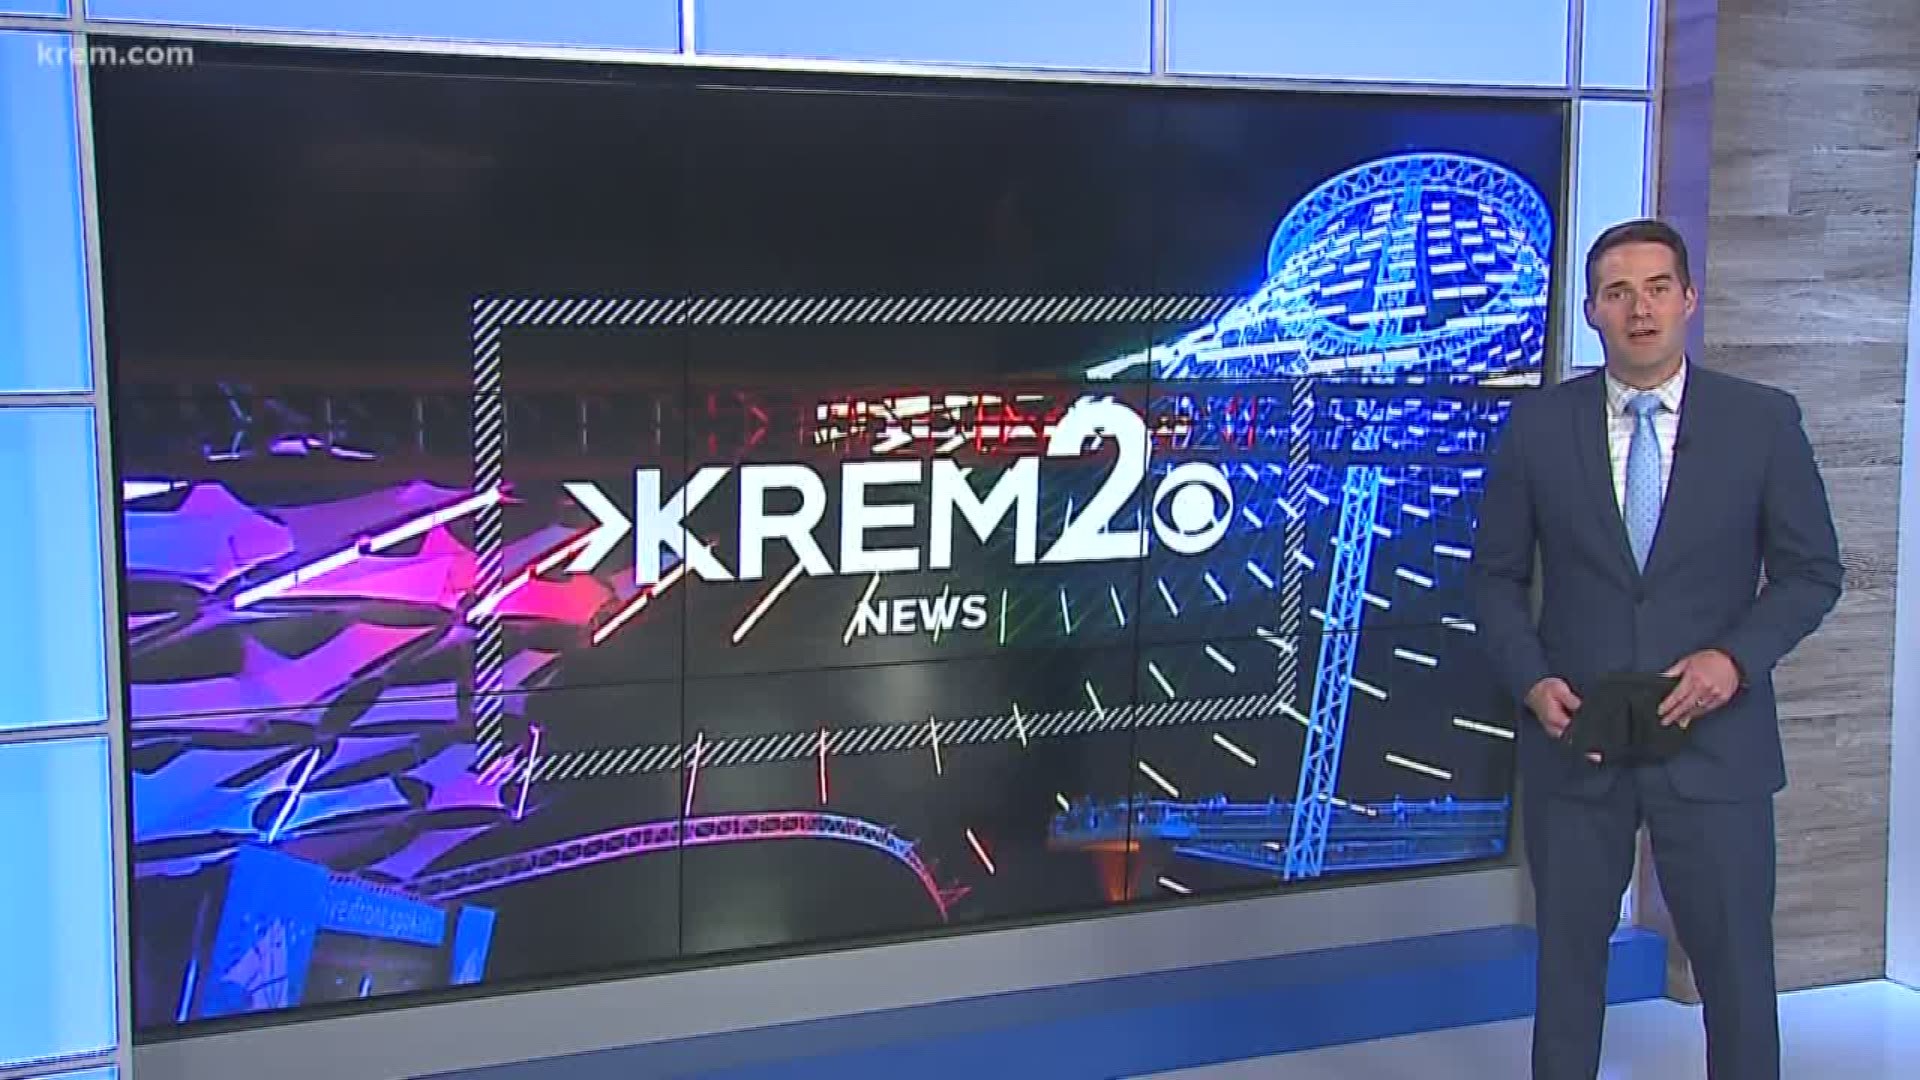 KREM 2 NEWS headlines at 11 p.m. on June 6, 2020